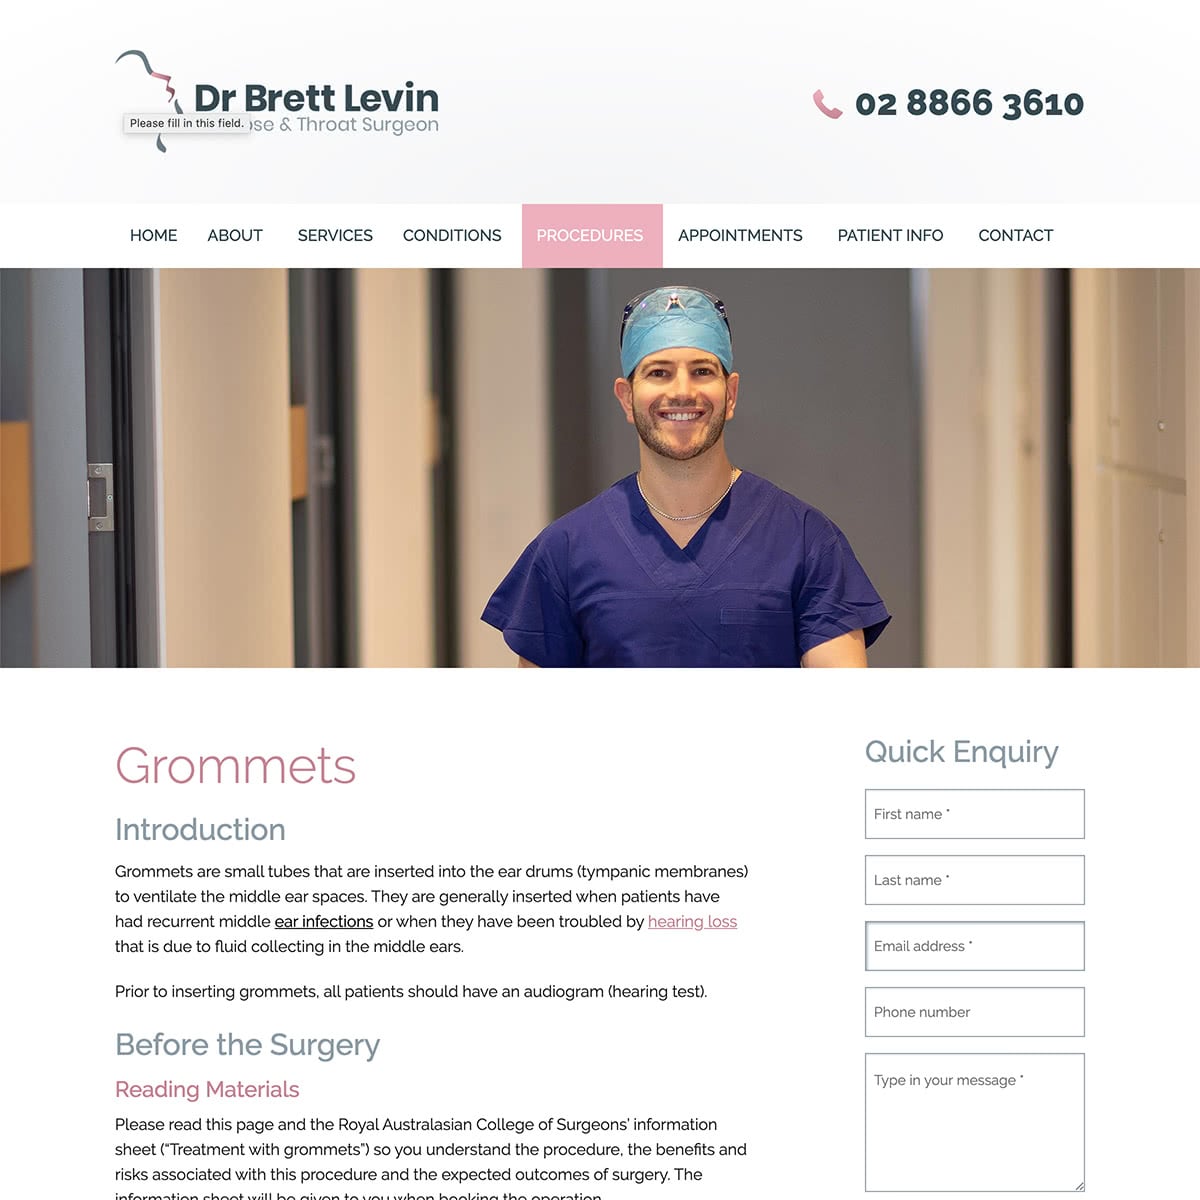 Dr Brett Levin - Procedures